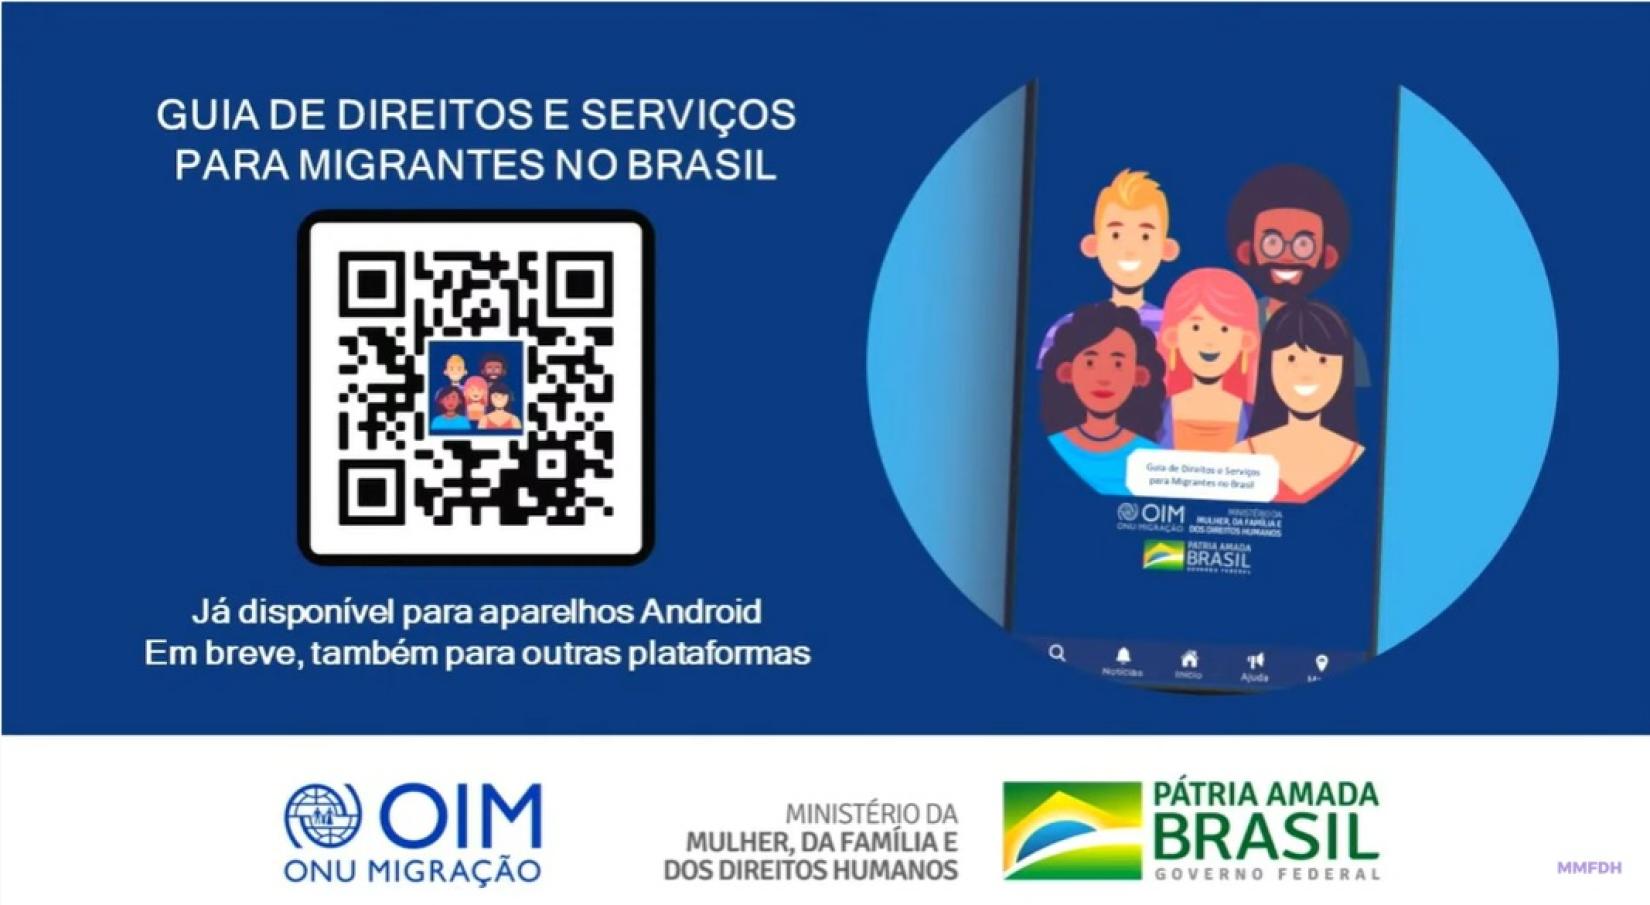 Aplicativo “Guia de Direitos e Serviços para Migrantes no Brasil” reúne informações sobre políticas públicas, direitos e serviços no país.